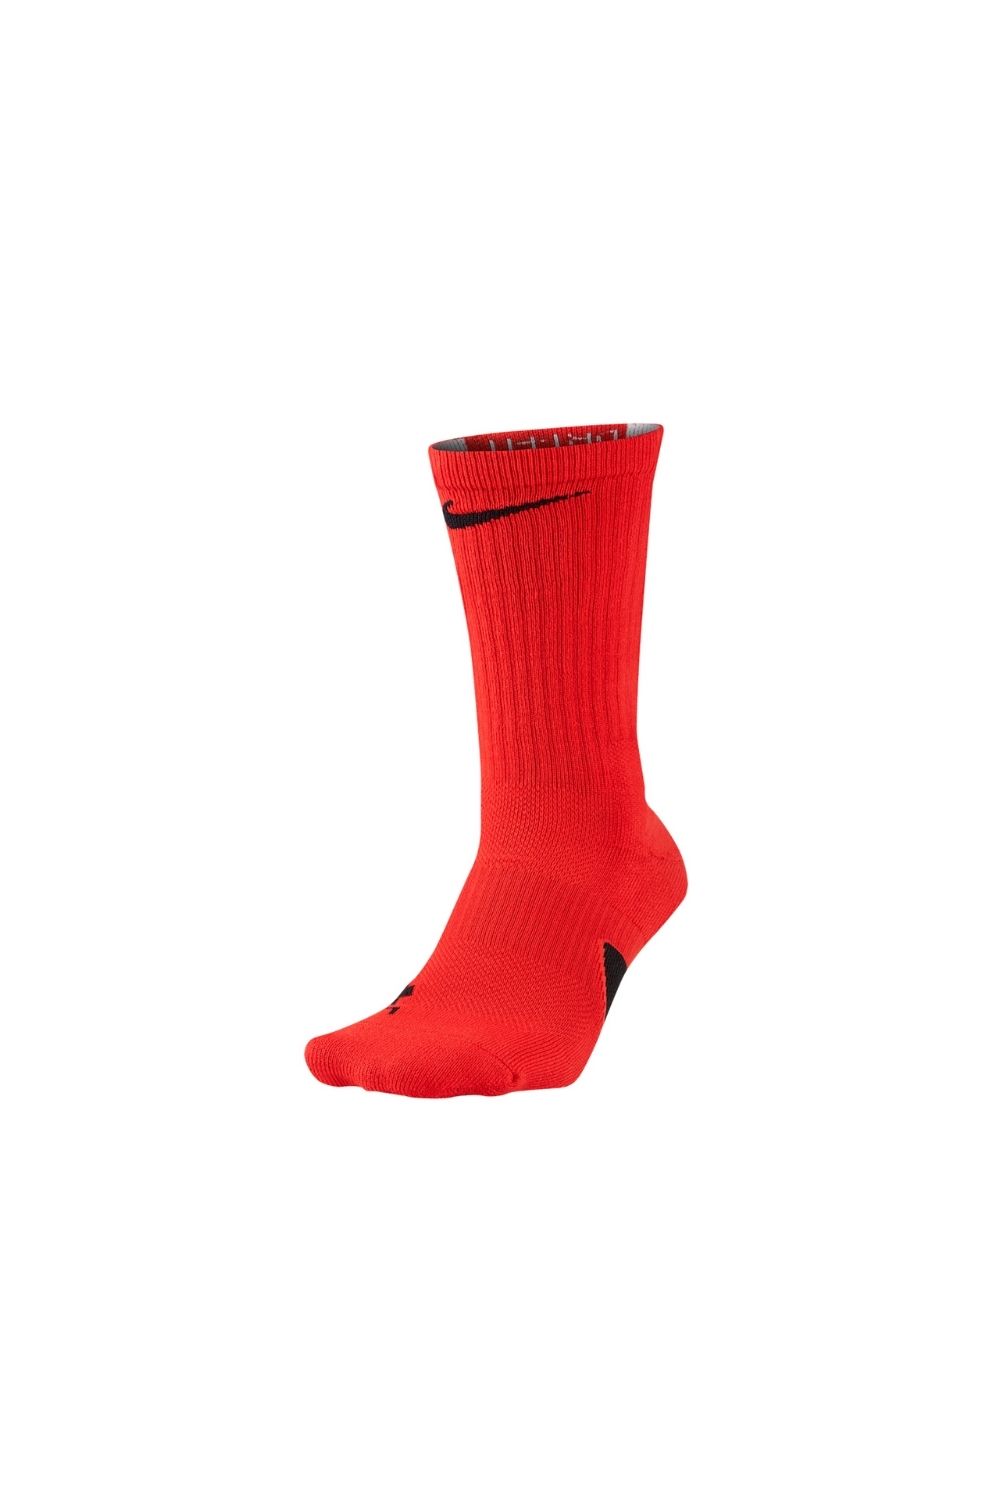 NIKE - Ανδρικές κάλτσες basketball Nike Elite Basketball Crew κόκκινες